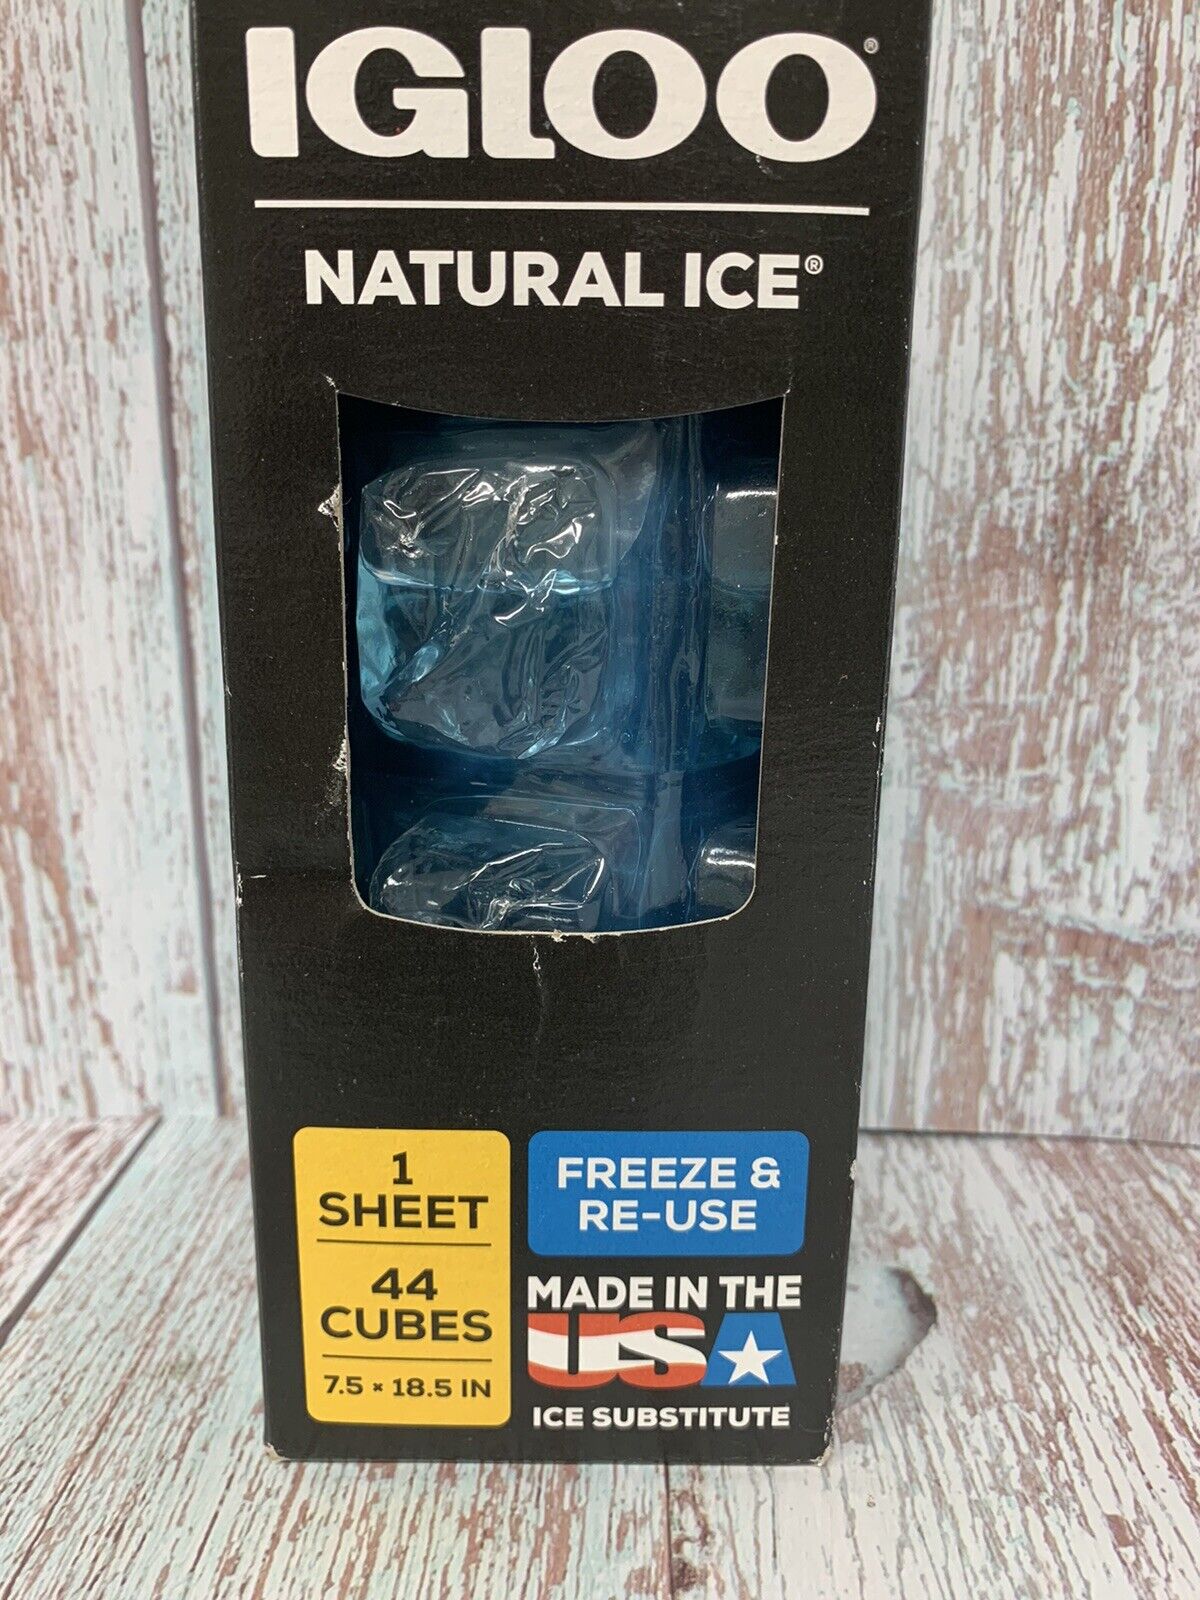 IGLOO Natural Ice Freeze & Reuse, 1 Box, 44 Cubes